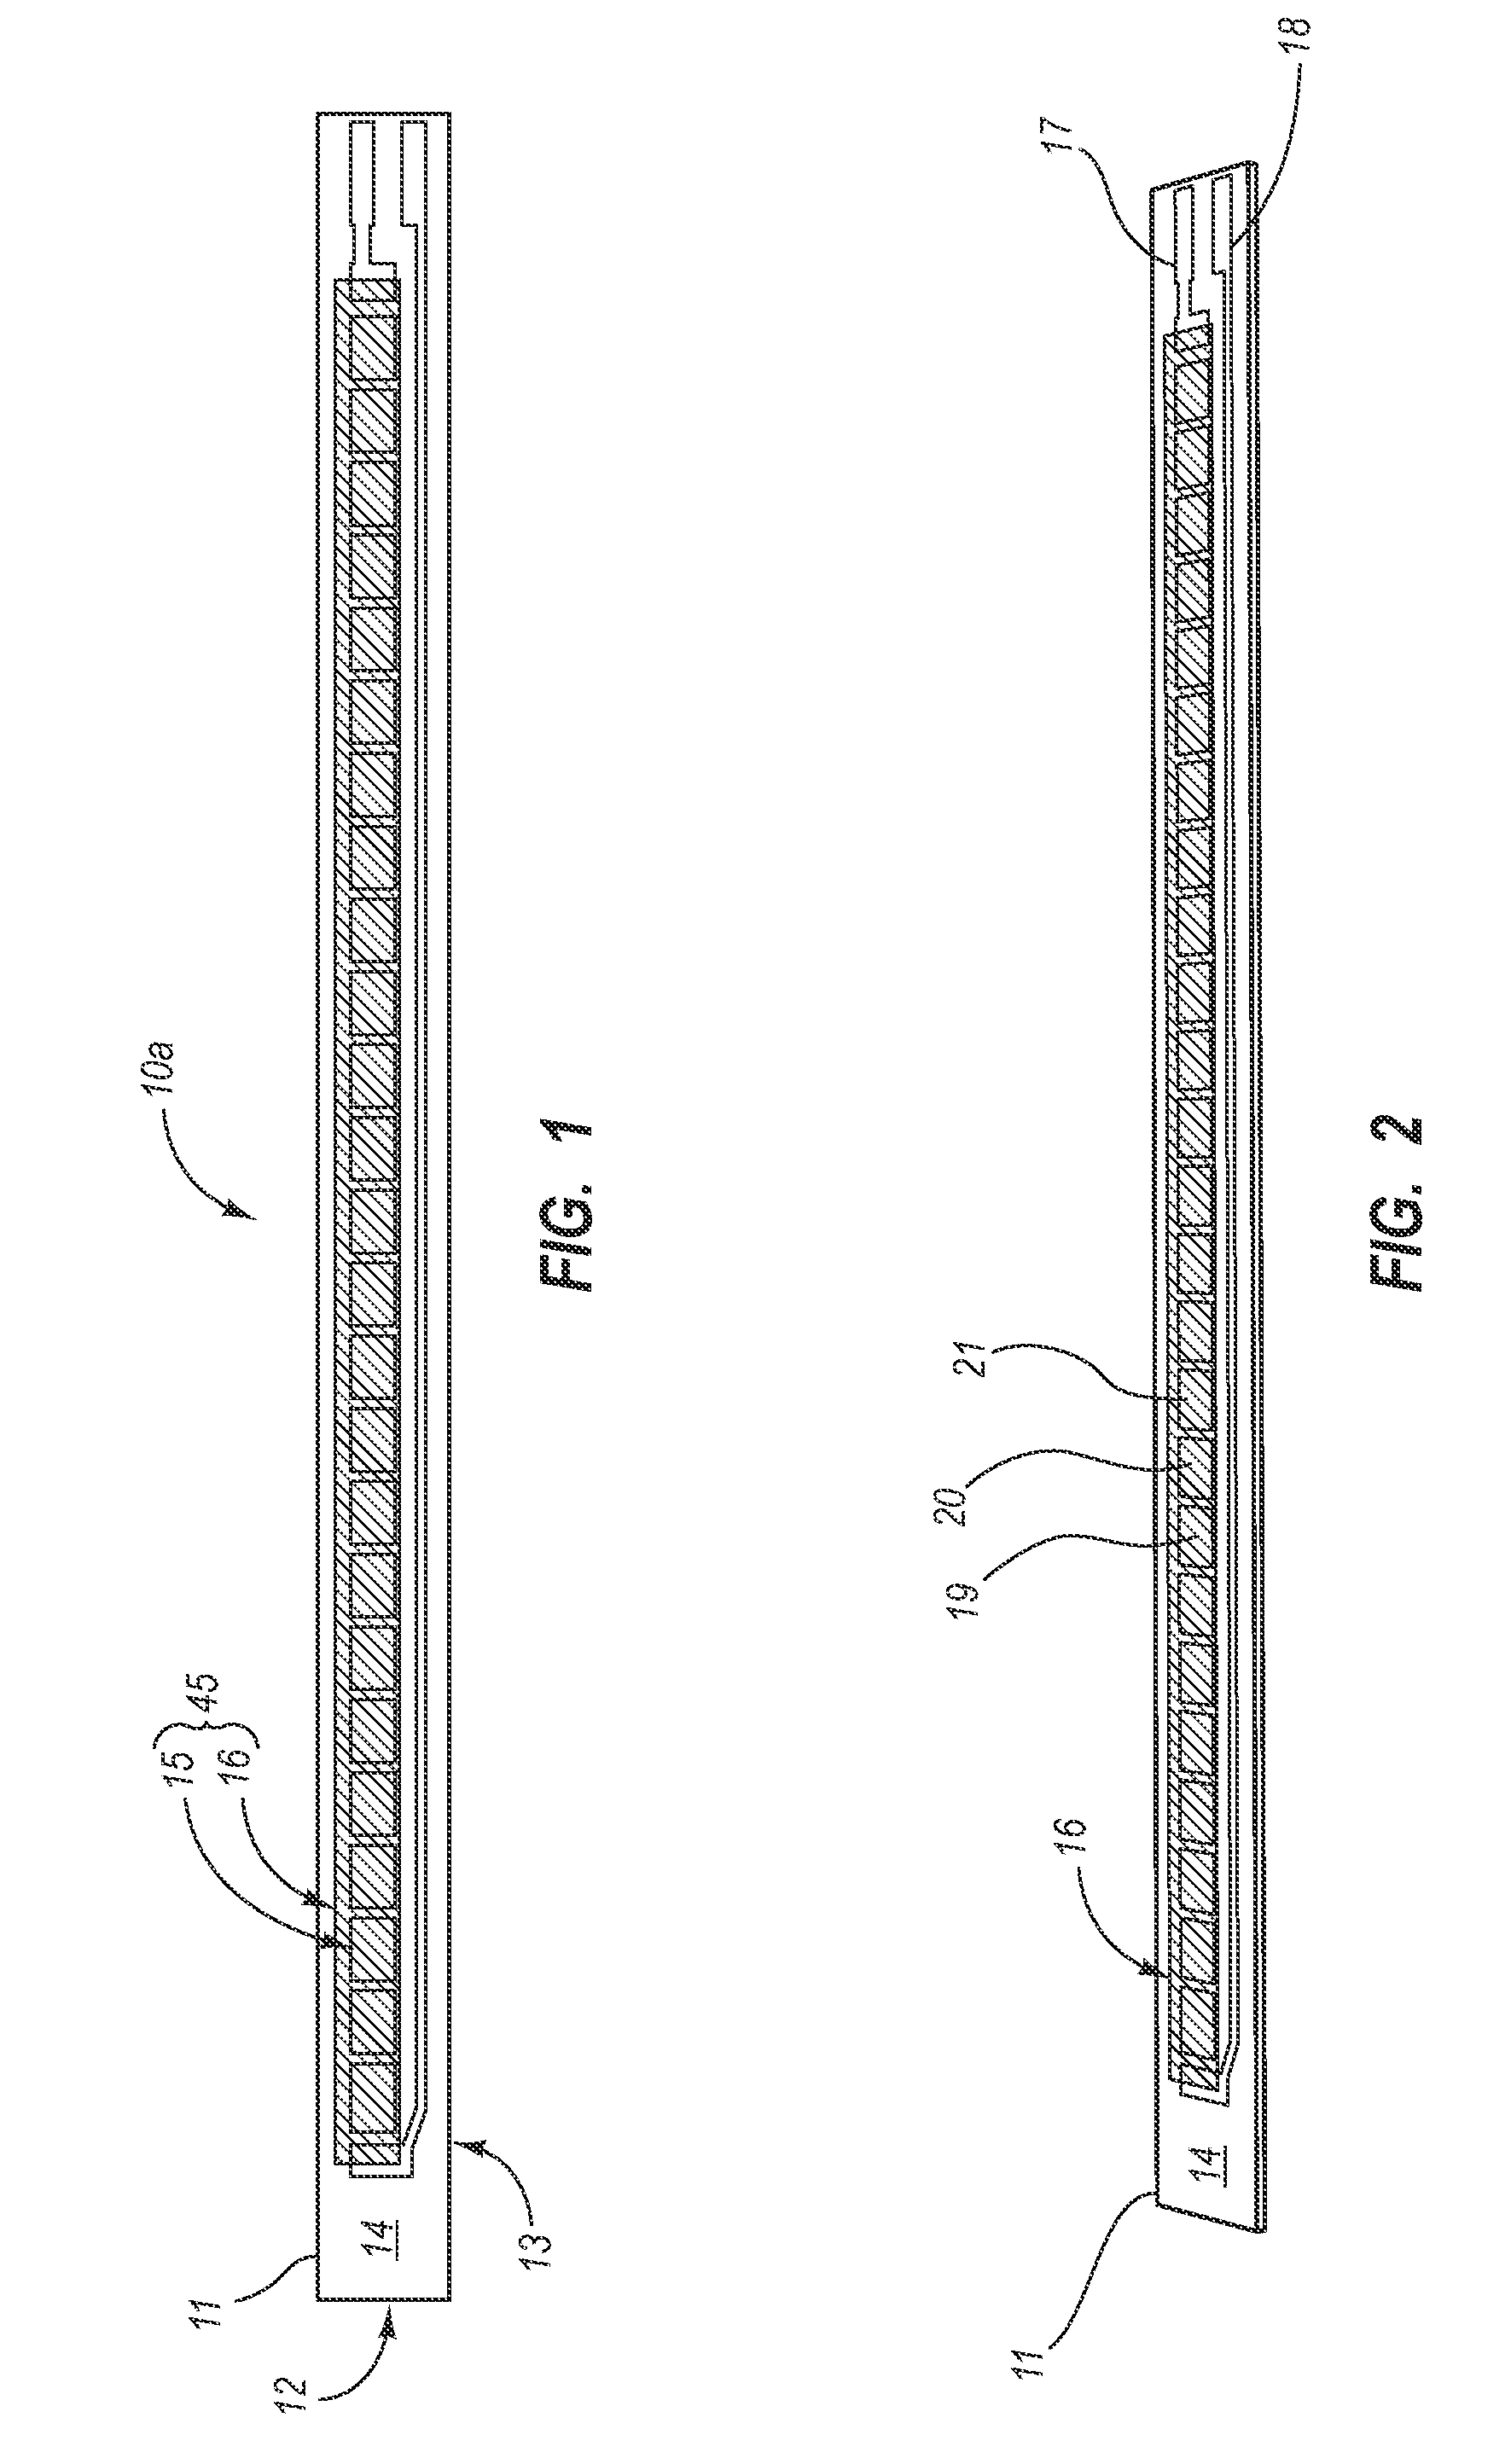 Bi-directional bend resistor